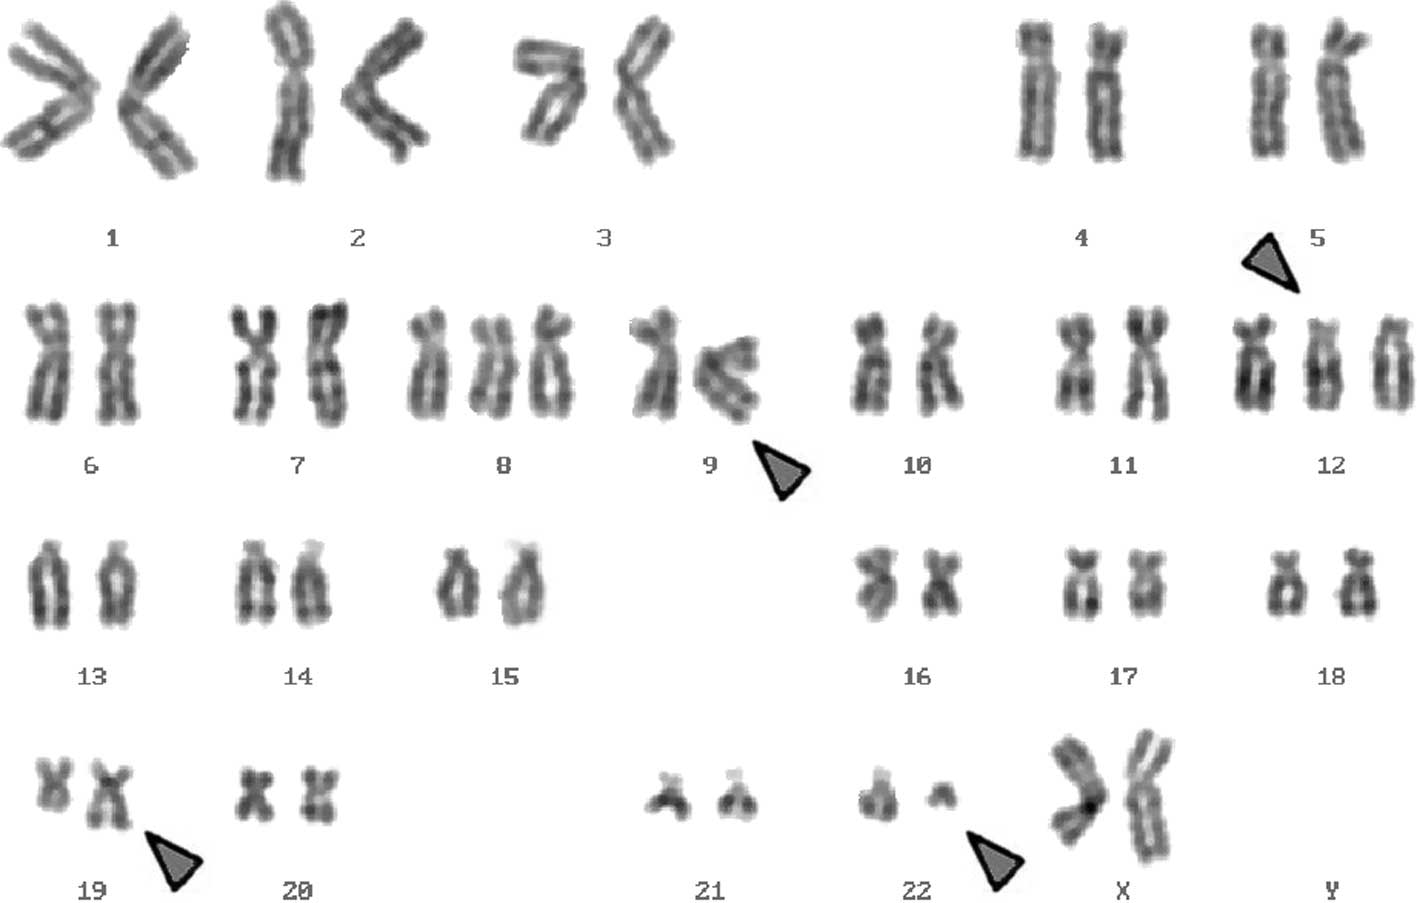 Пересадка хромосом. Филадельфийская хромосома кариотип. Транслокация кариотип. Синдром Клайнфельтера кариотип. Транслокация хромосом кариотип.